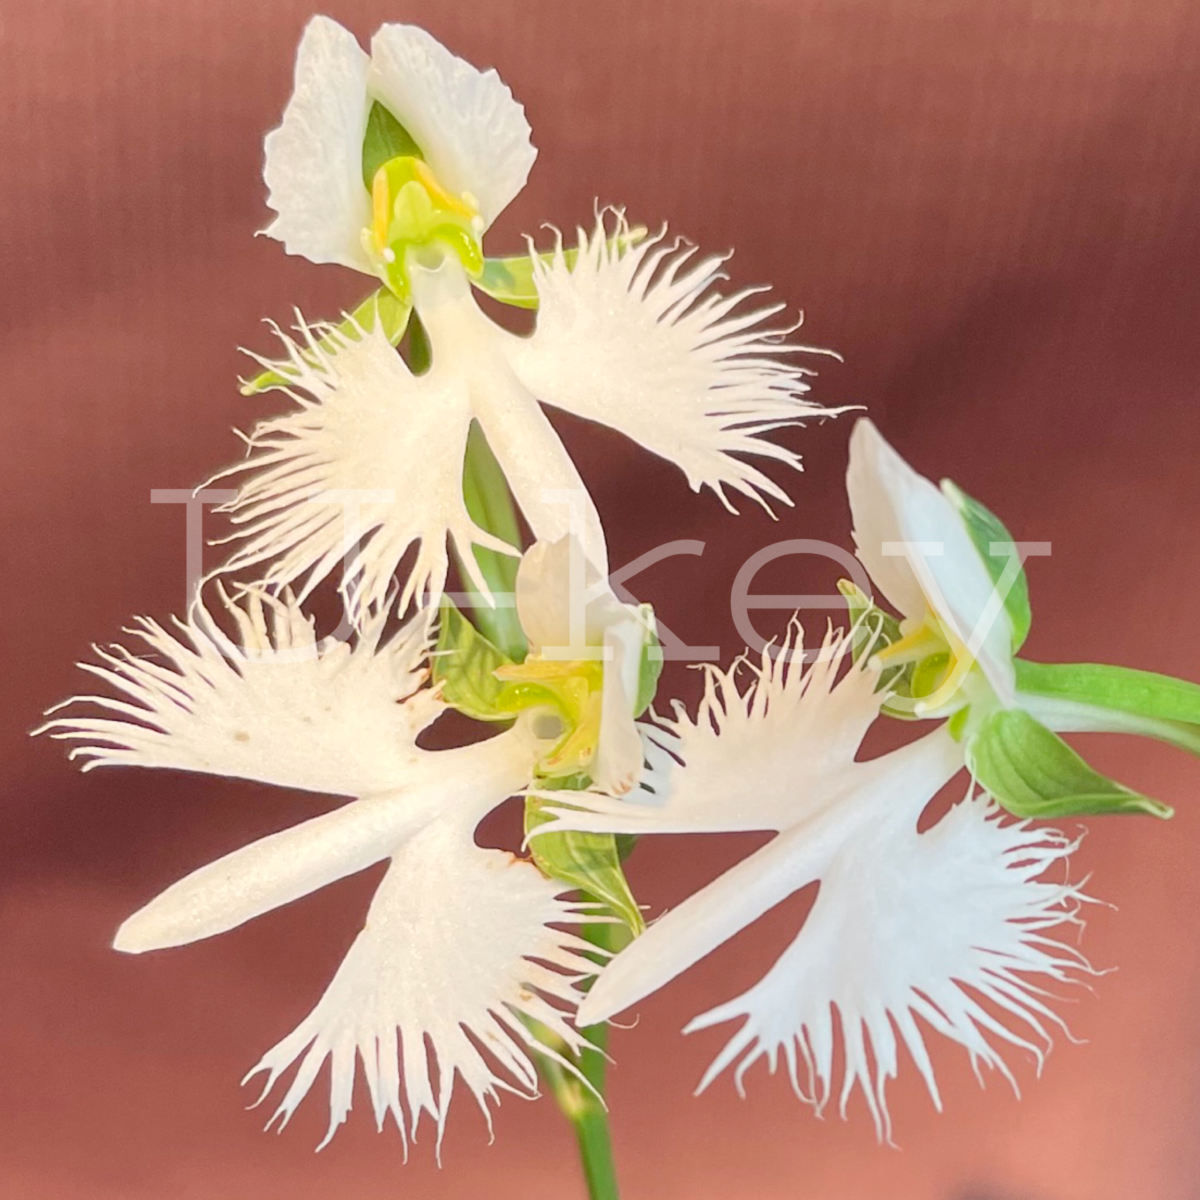 Sagi-Orchid ‘Ginga’, Pecteilis radiata